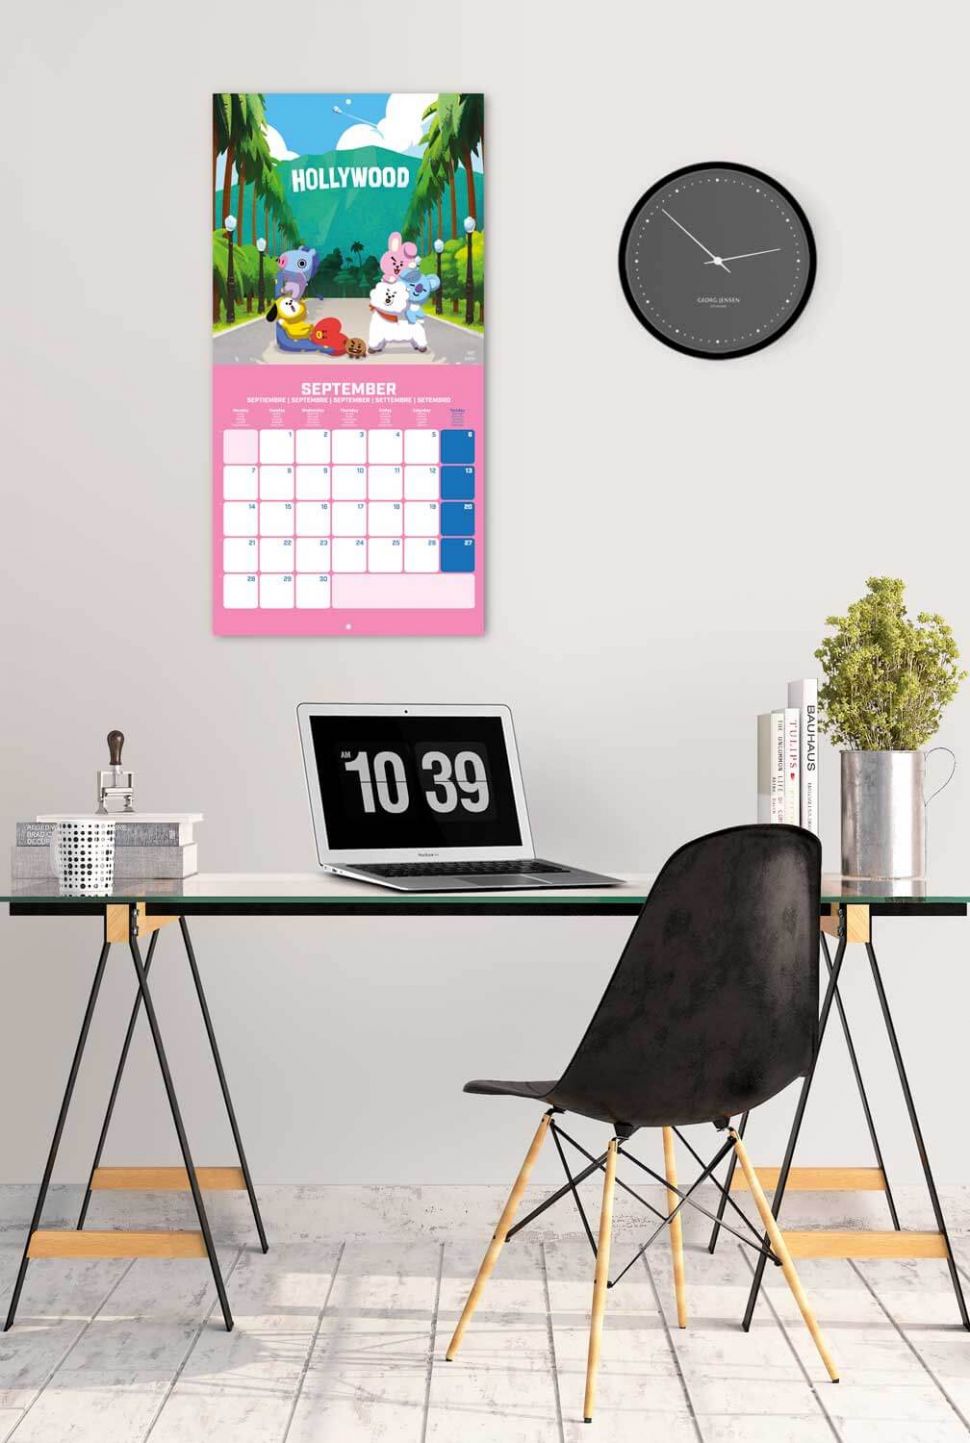 Kalendarz 2020 z BT21 powieszony nad biurkiem